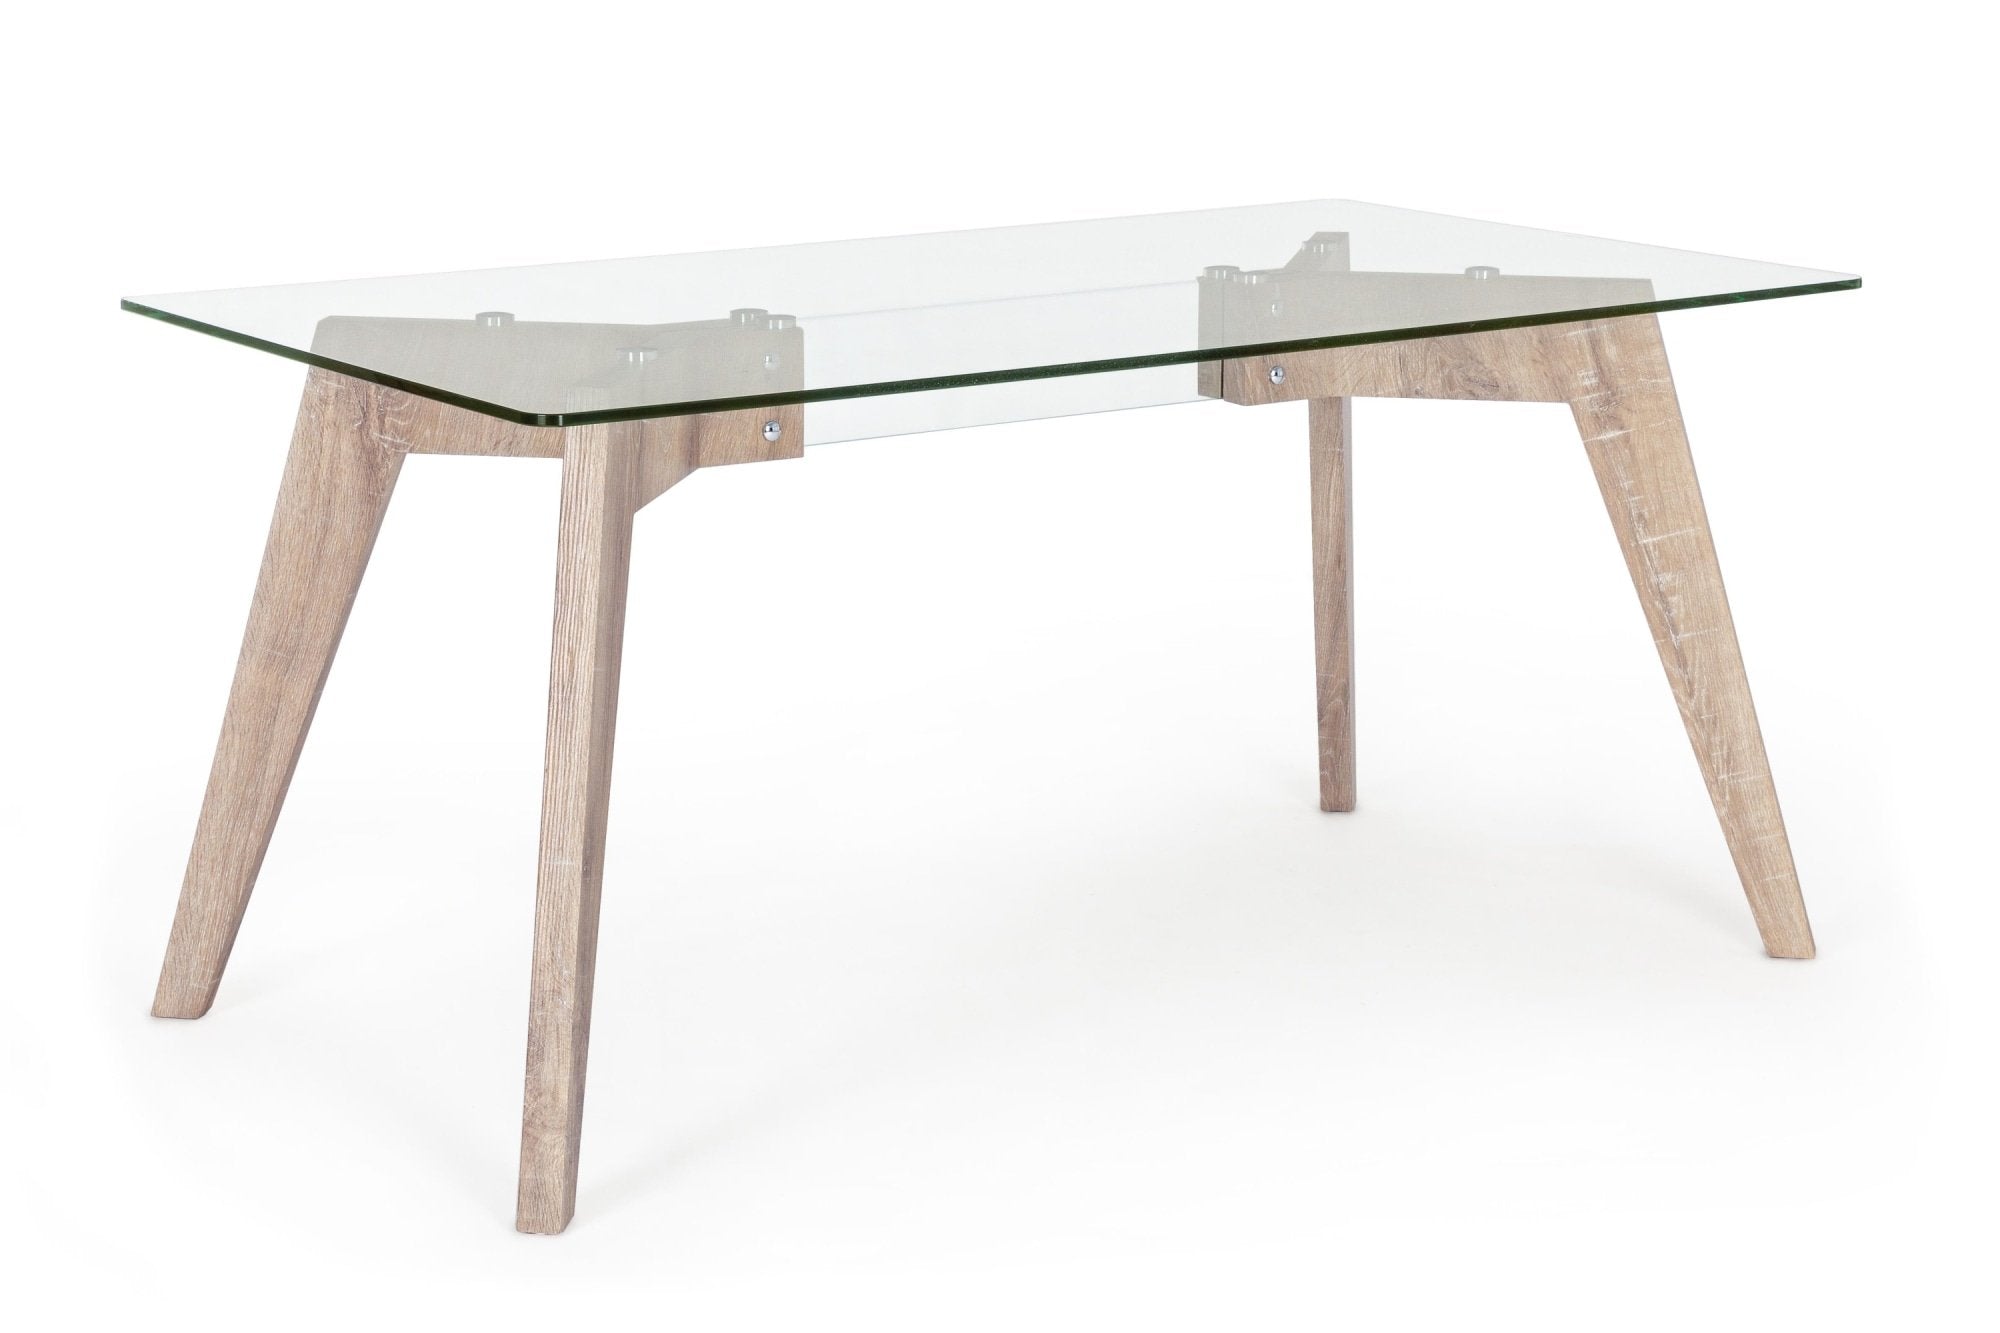 Aryan Kenya Asztal, Bizzotto, 160 x 90 x 76 cm, MDF/edzett üveg